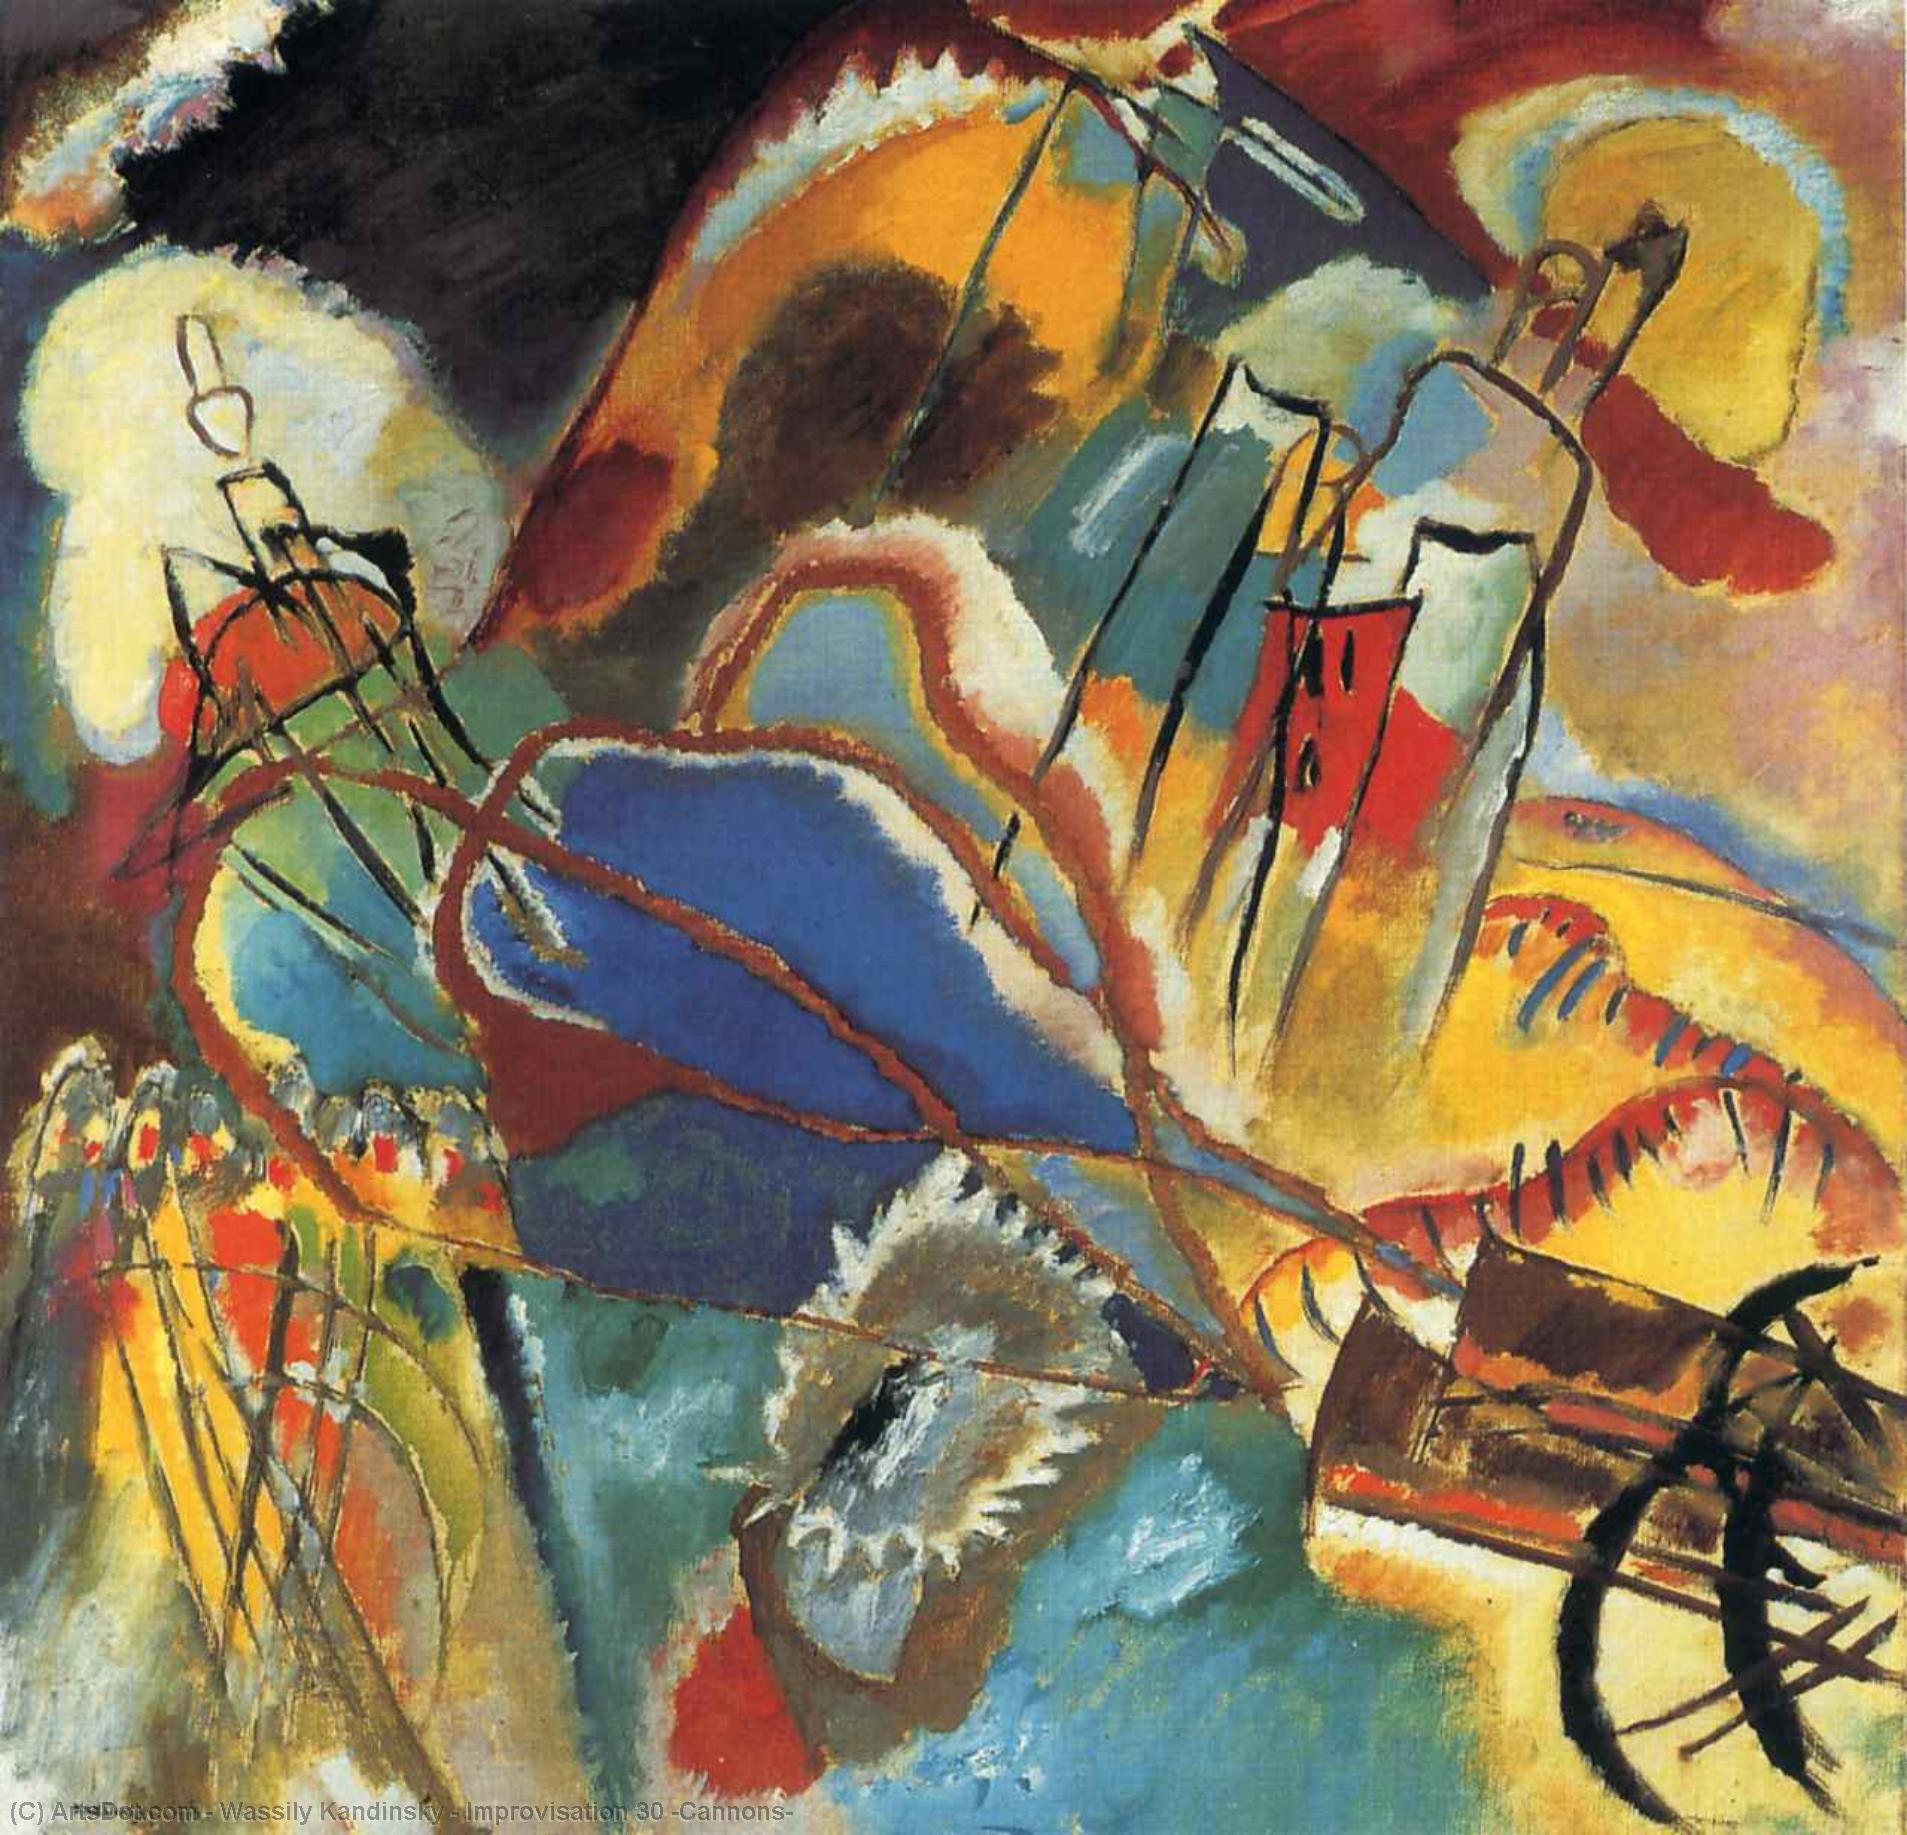 WikiOO.org - אנציקלופדיה לאמנויות יפות - ציור, יצירות אמנות Wassily Kandinsky - Improvisation 30 (Cannons)